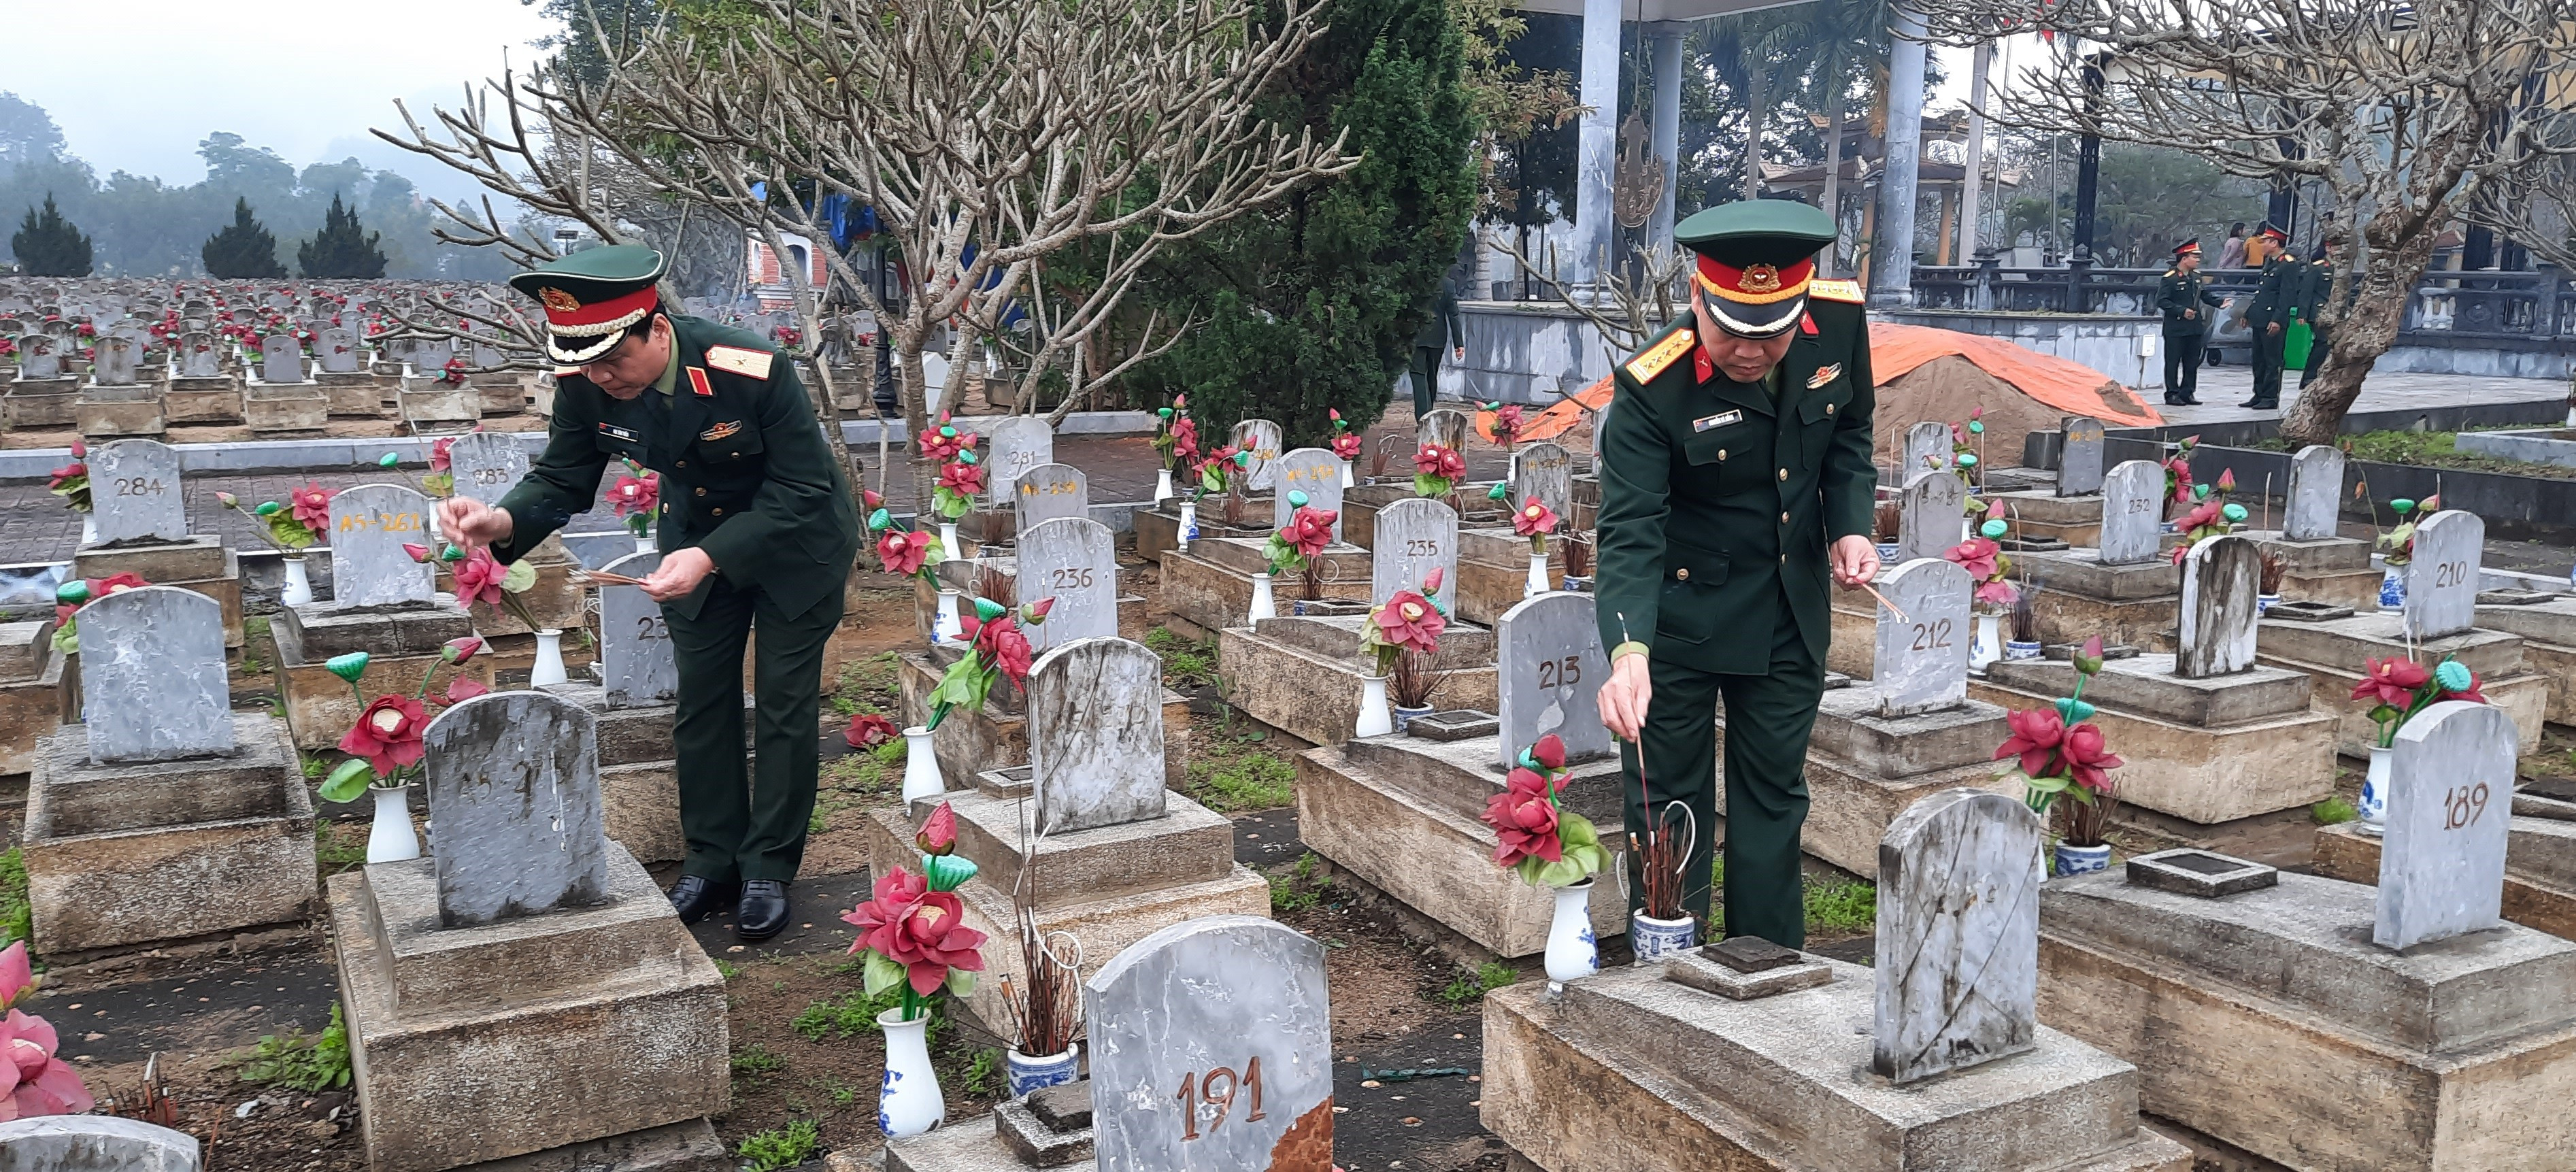 Các đại biểu thắp hương tại các phần mộ ở nghĩa trang liệt sỹ quốc tế Việt - Lào.